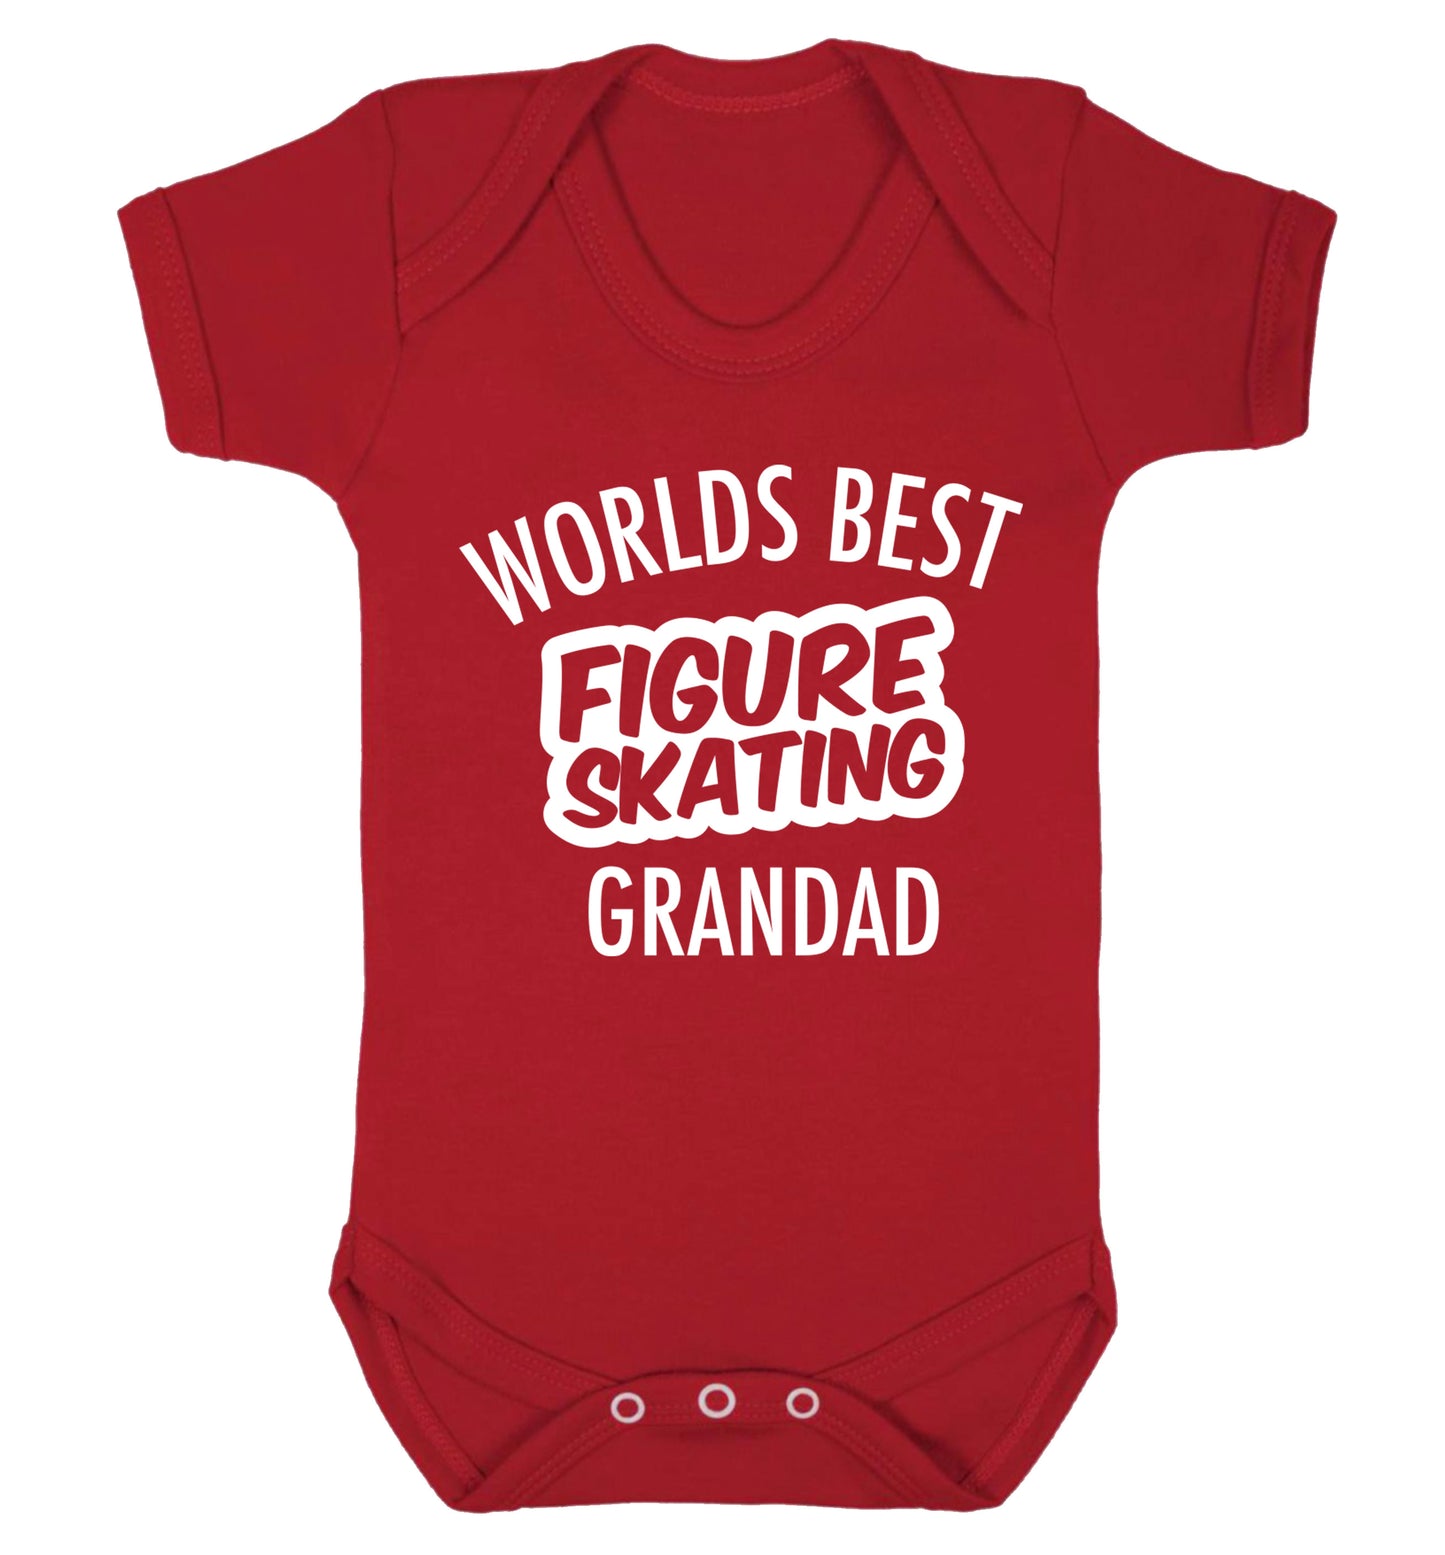 Worlds best figure skating grandad Baby Vest red 18-24 months